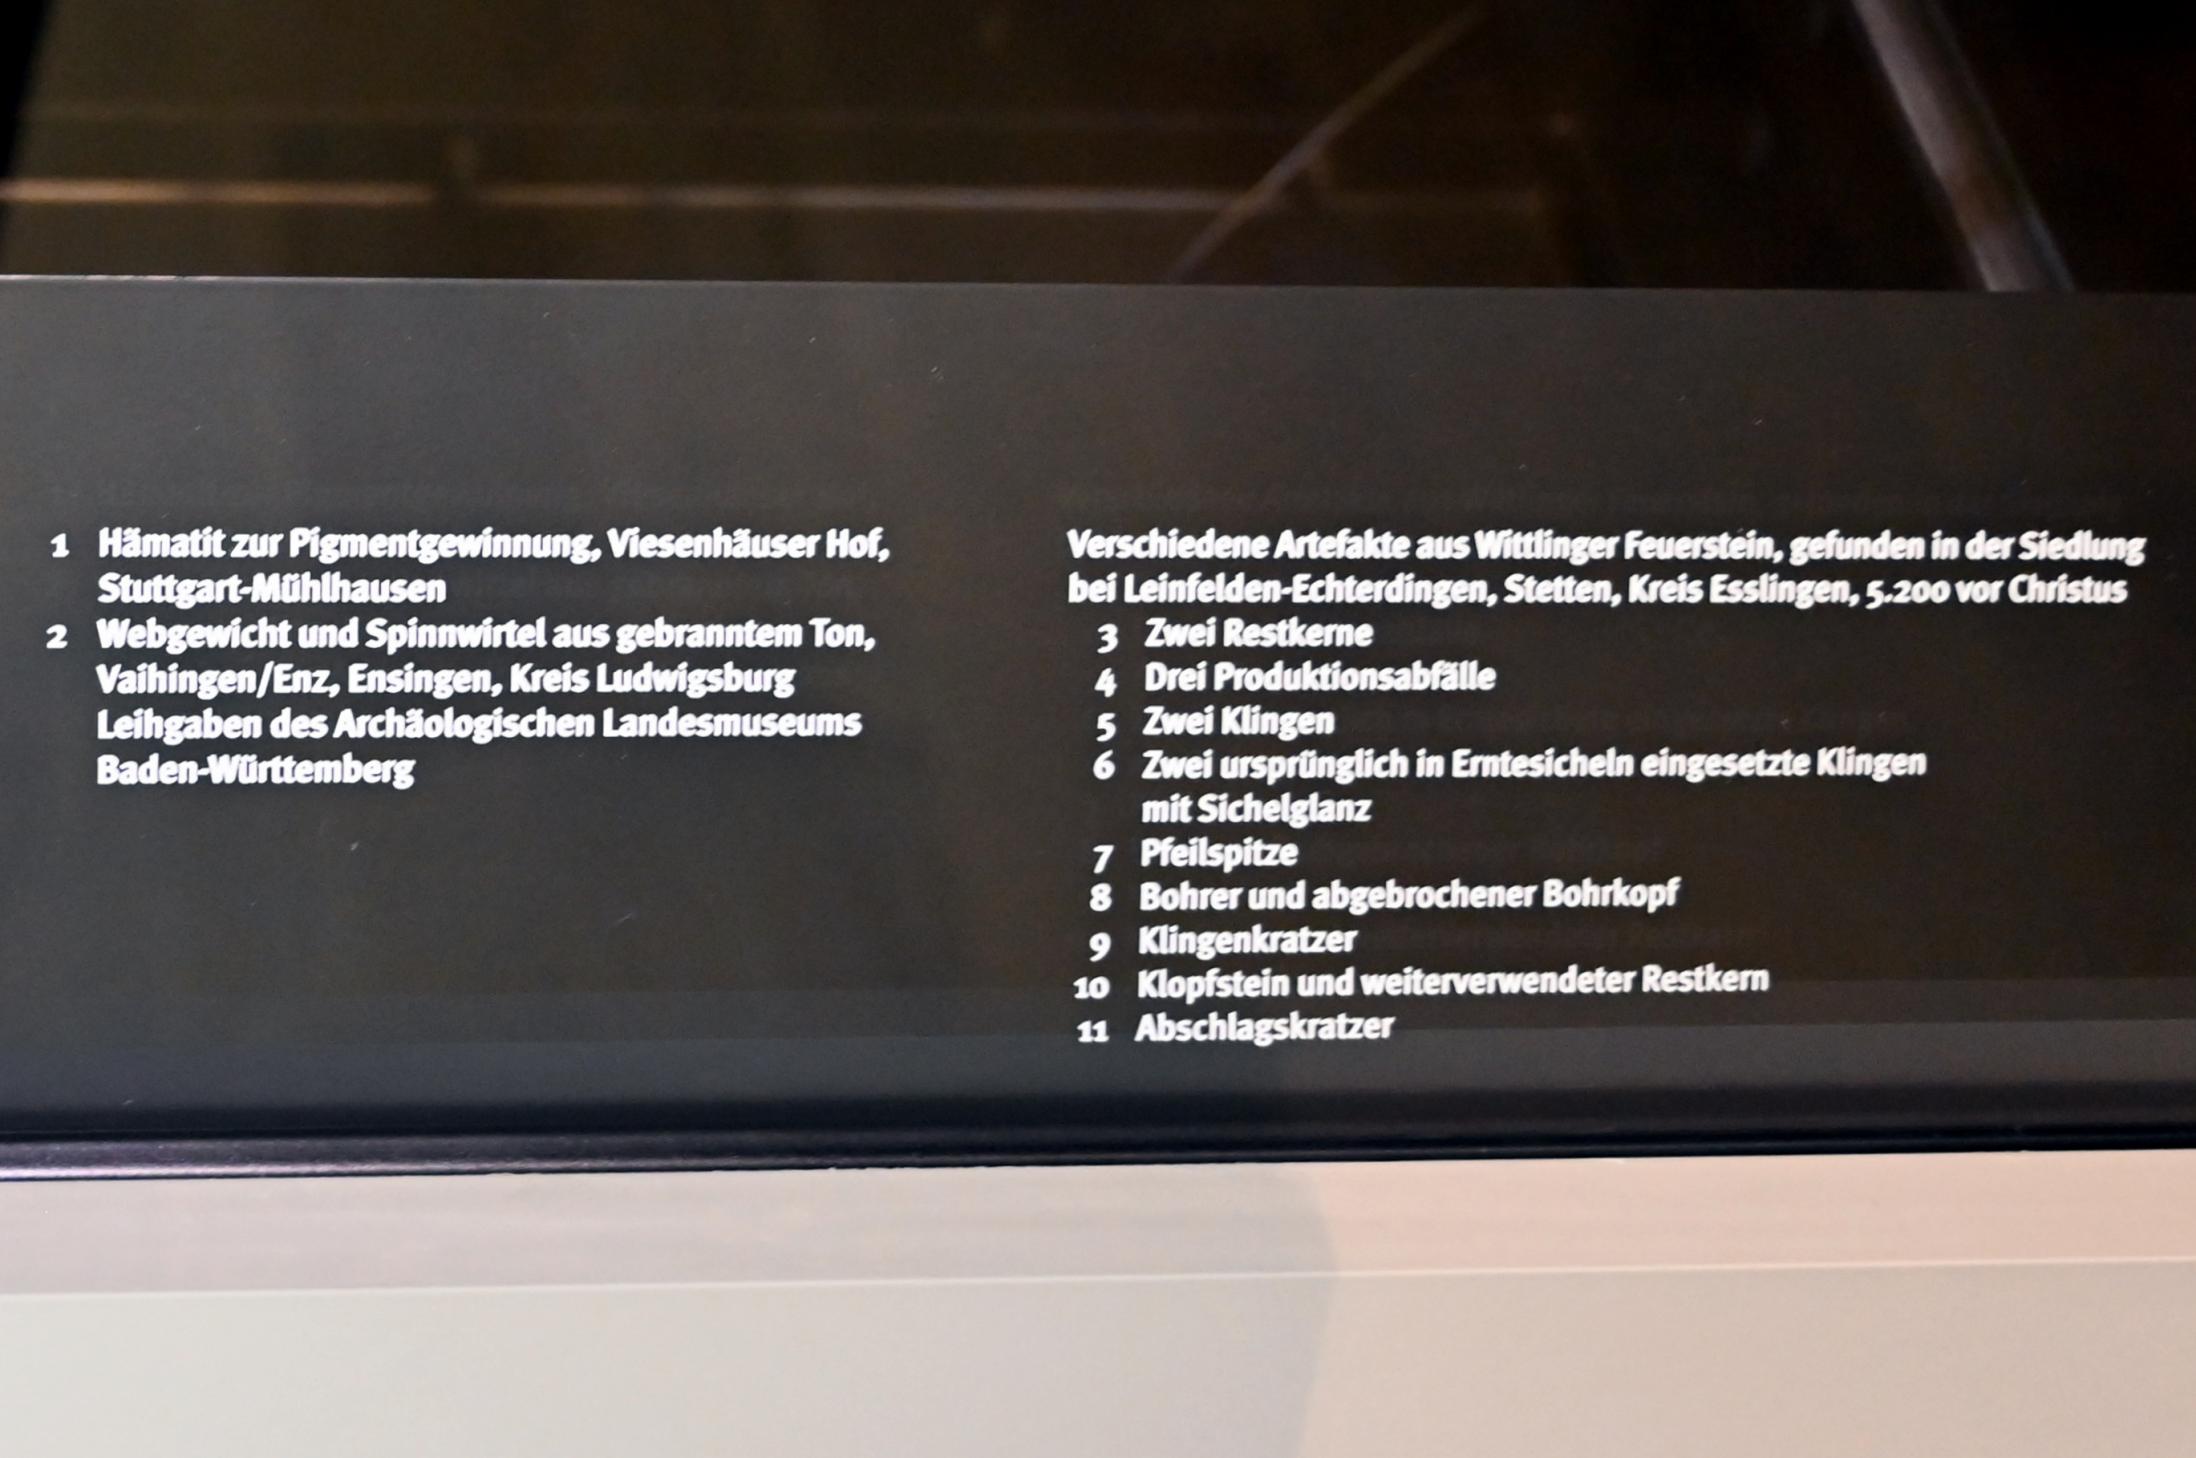 Klopfstein und weiterverwendeter Restkern, Neolithikum (Jungsteinzeit), 5500 - 1700 v. Chr., 5200 v. Chr., Bild 2/3